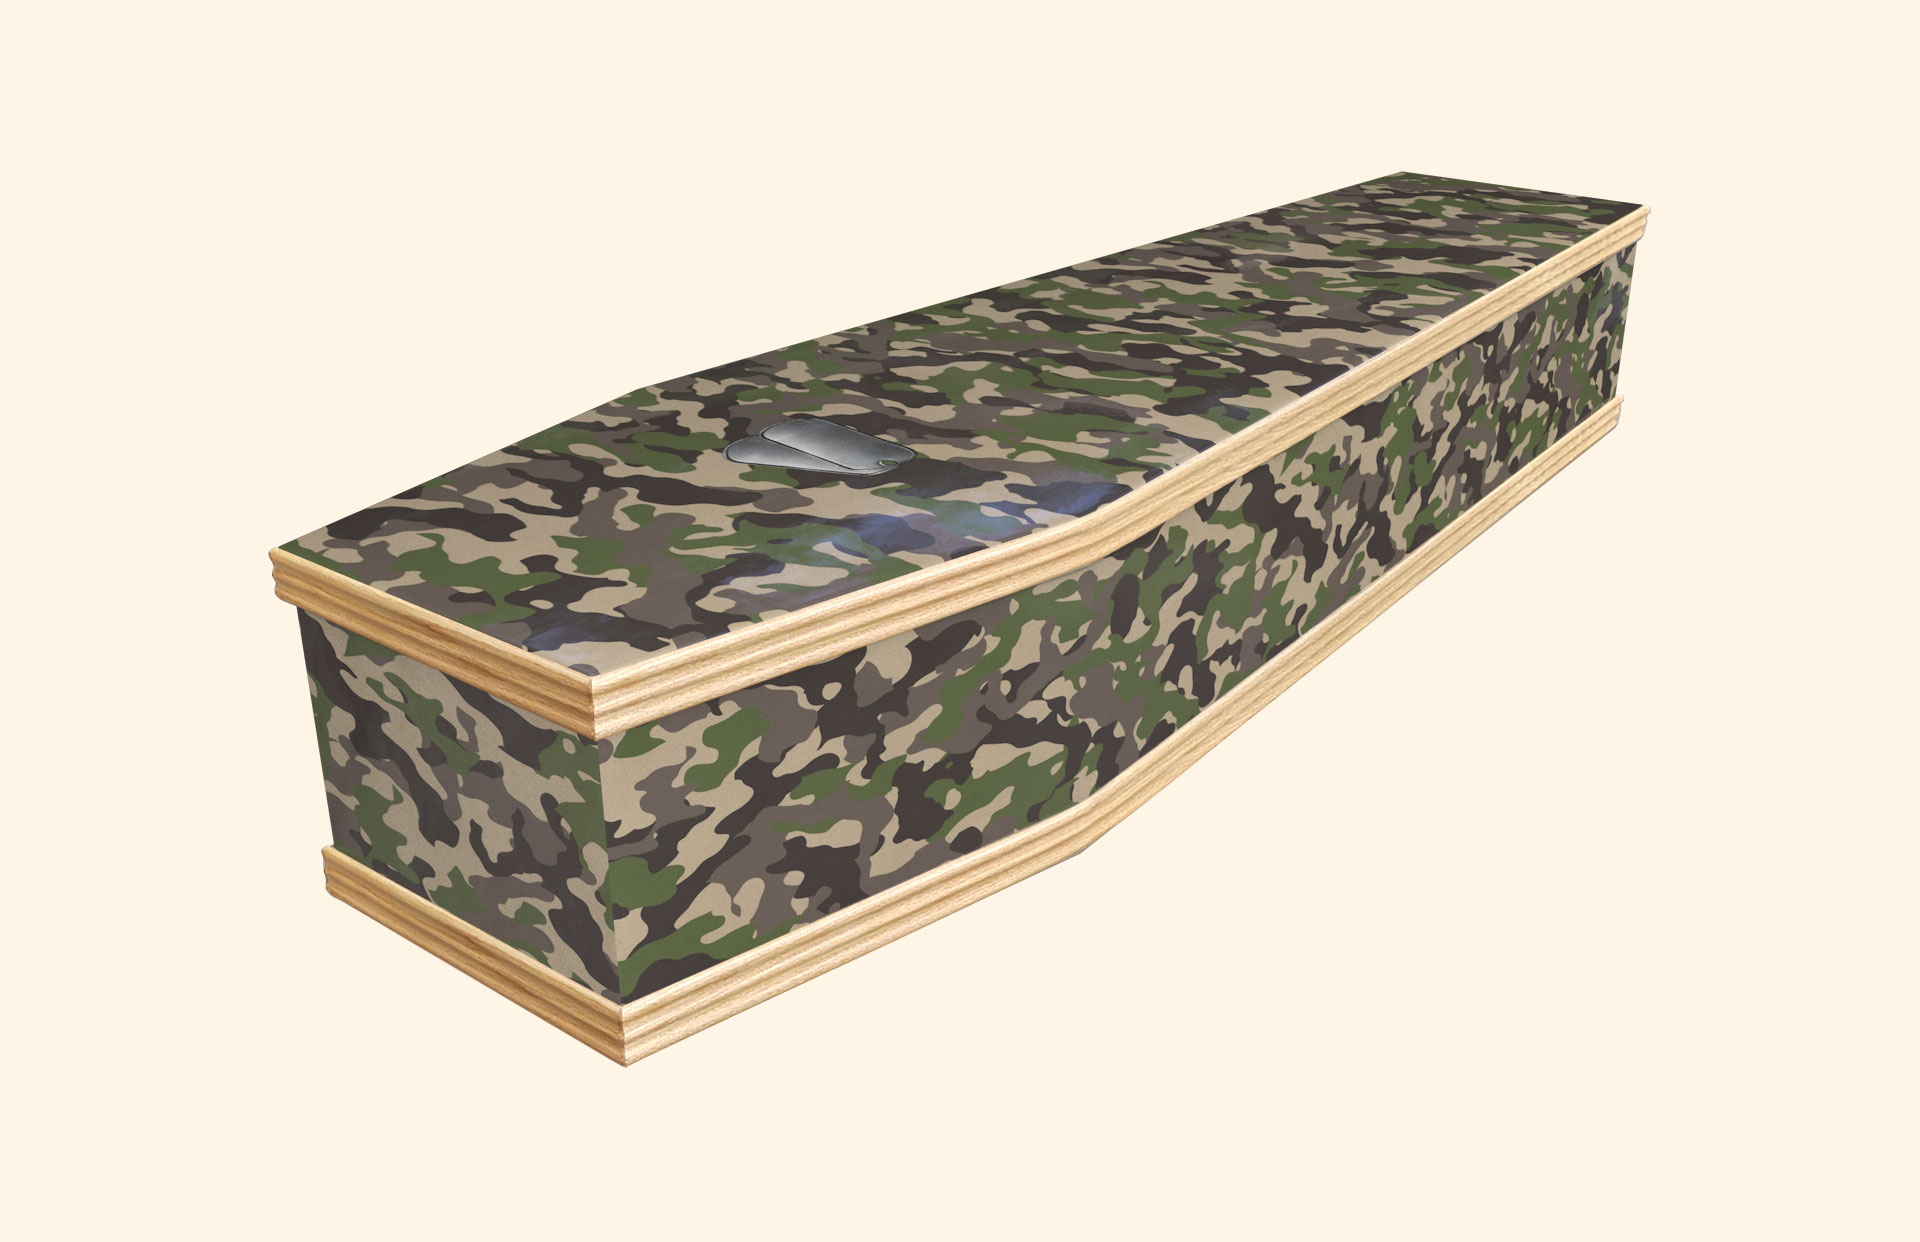 Camo design on a classic coffin